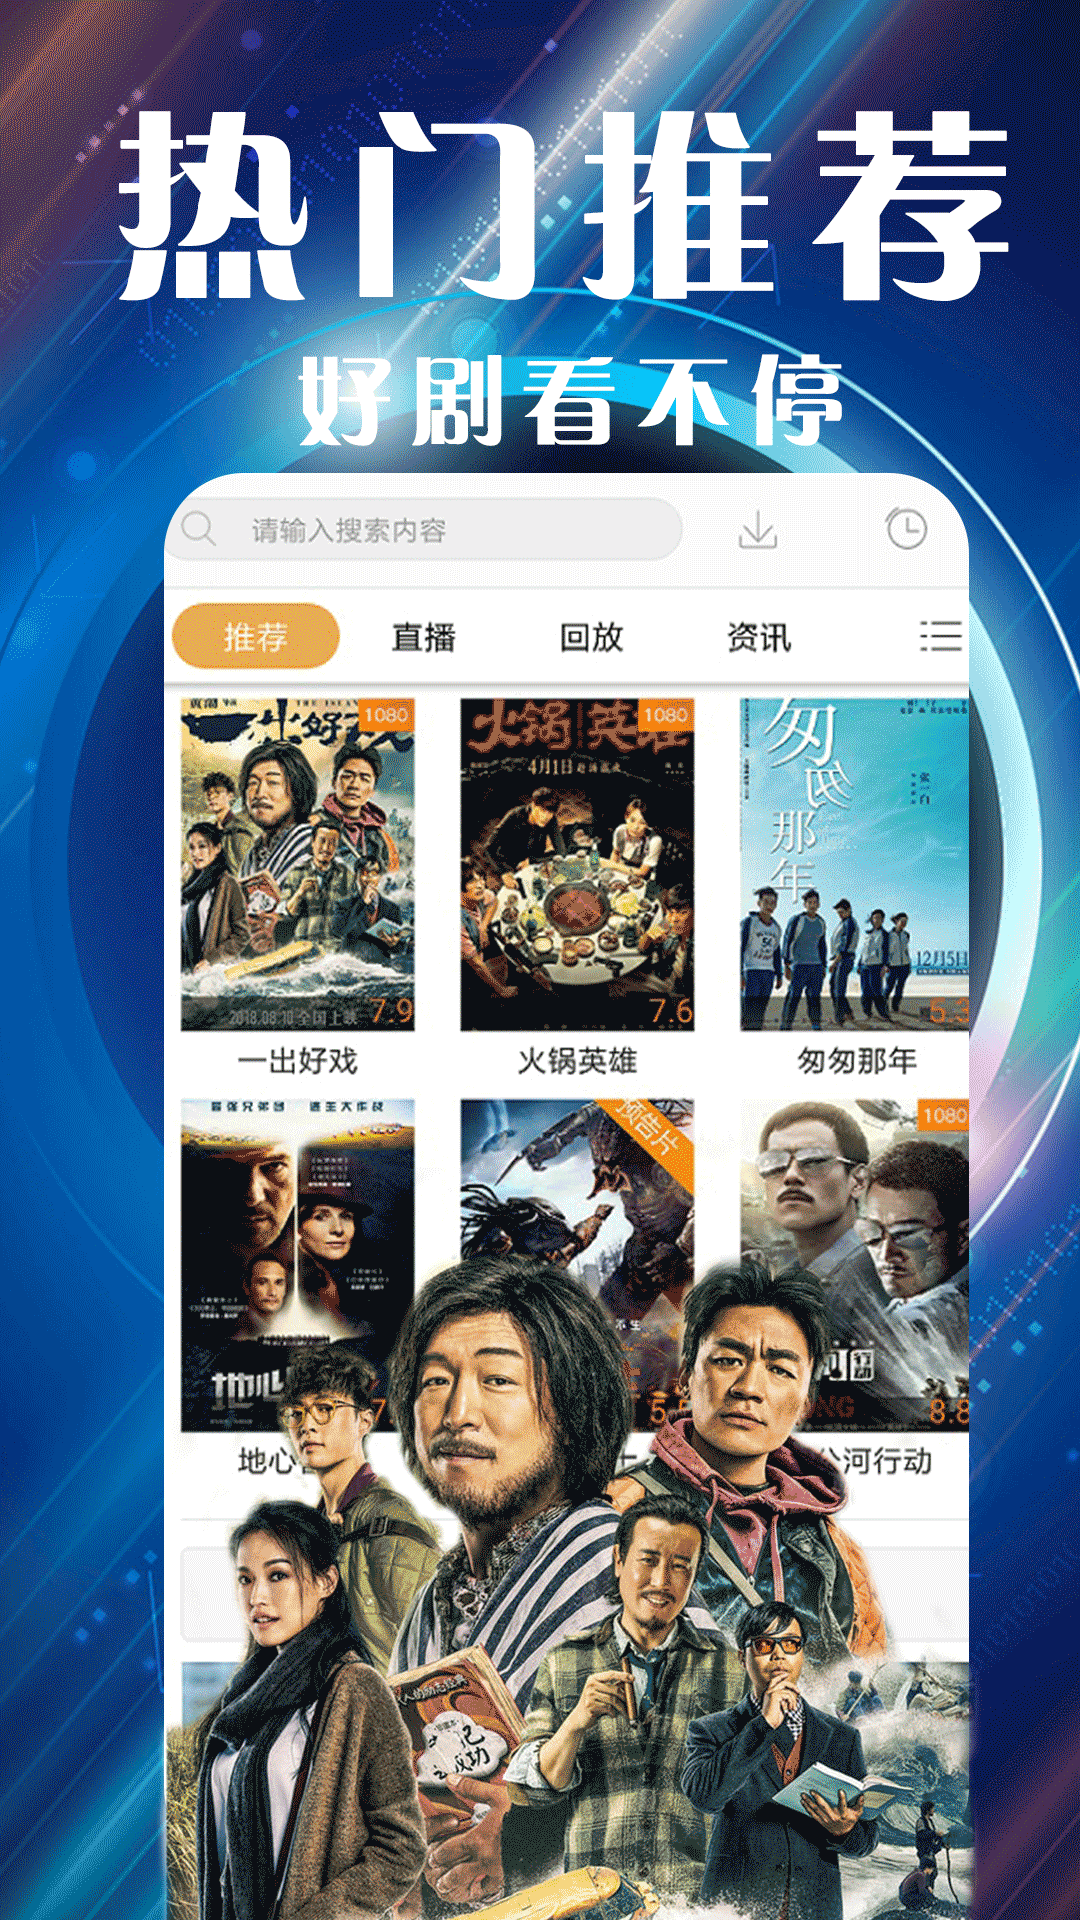 免费线上看电影电视剧APP, 支持安卓iOS设备｜泥巴影院APP - Mixsharing